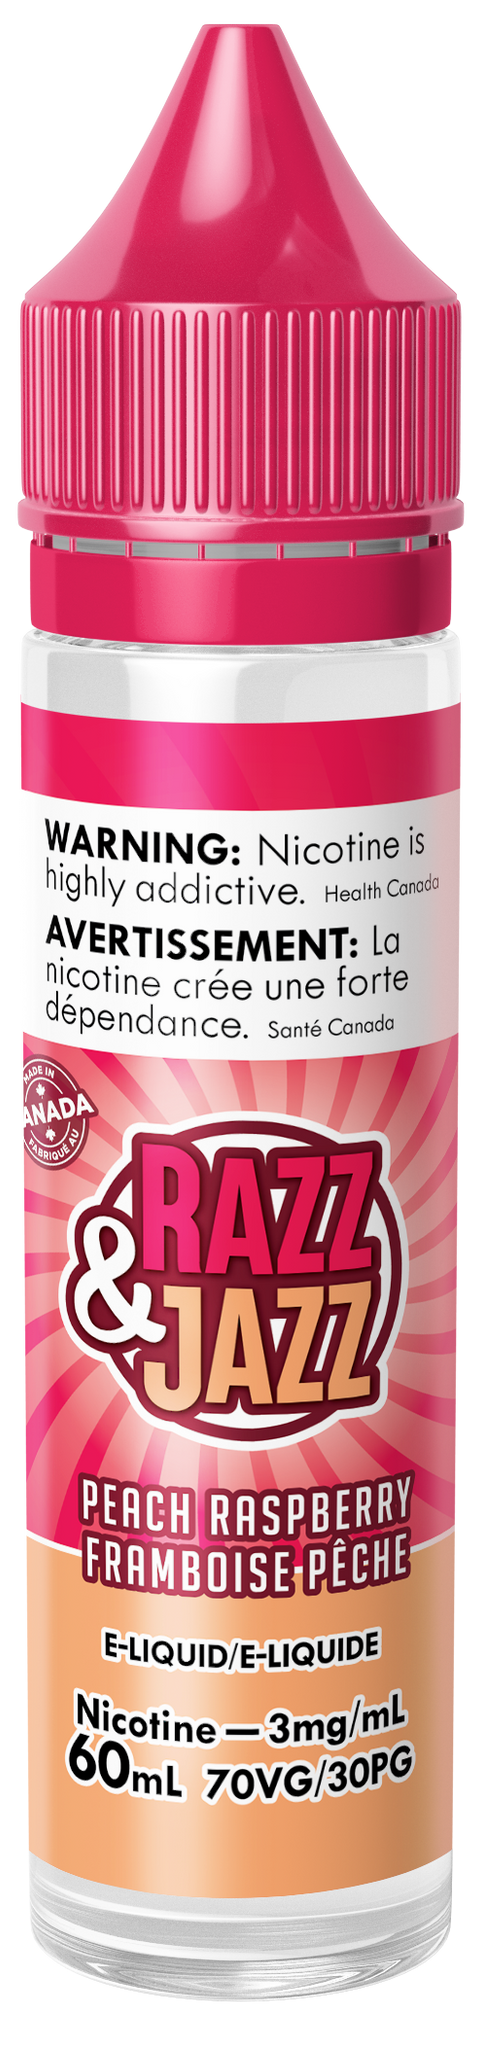 Razz and Jazz: Peach Raspberry